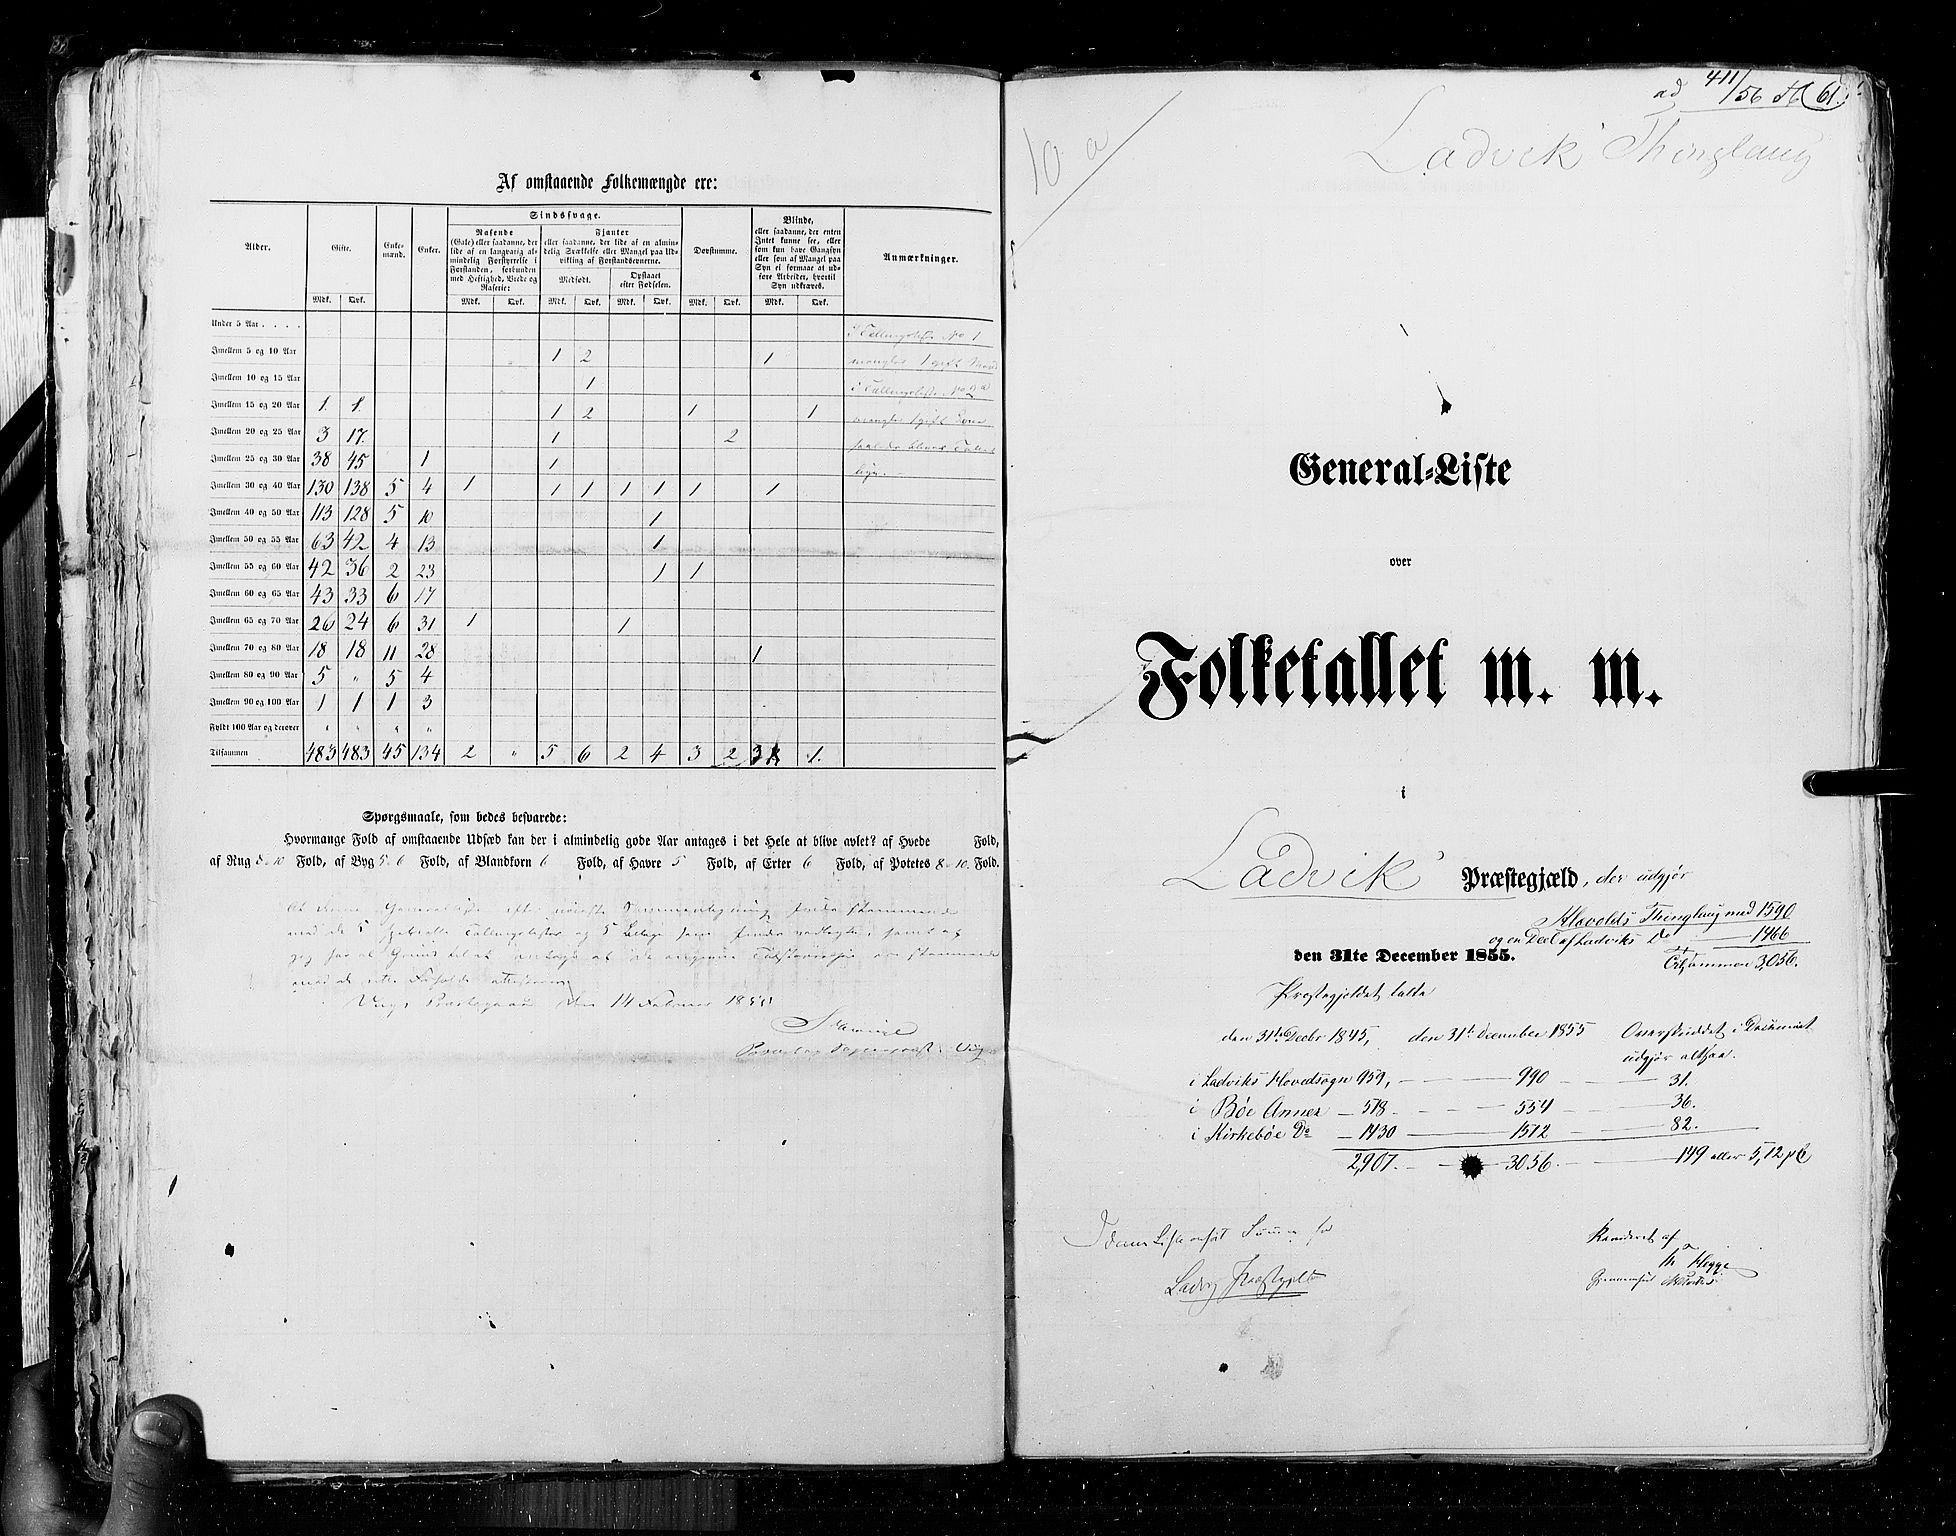 RA, Census 1855, vol. 5: Nordre Bergenhus amt, Romsdal amt og Søndre Trondhjem amt, 1855, p. 61